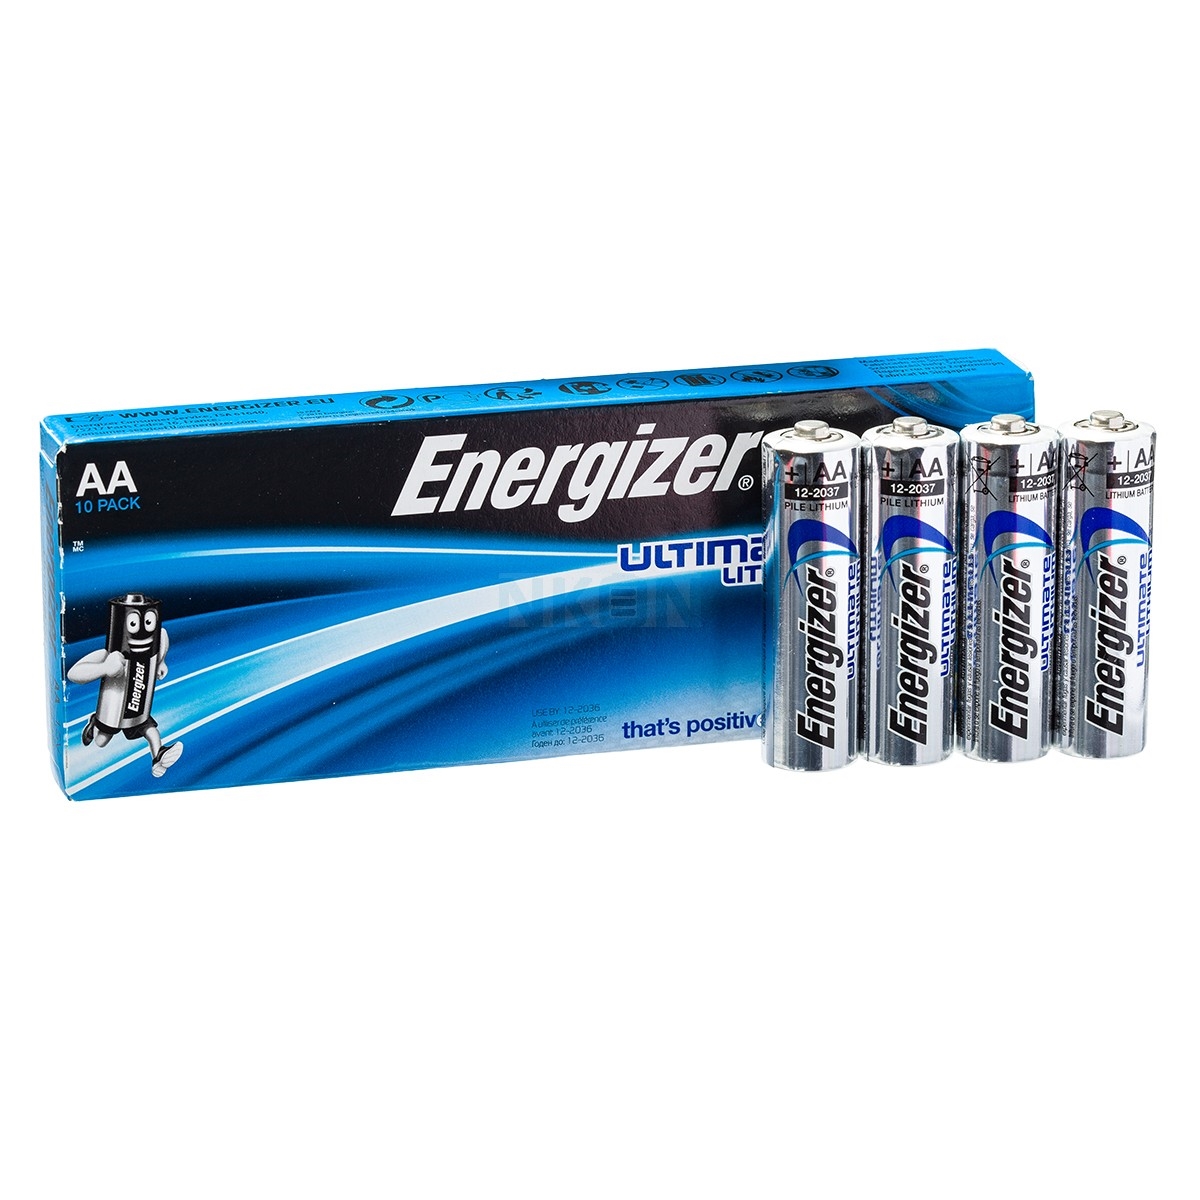 fødsel Brise trække sig tilbage Energizer AA lithium batteri10 stk. pakning